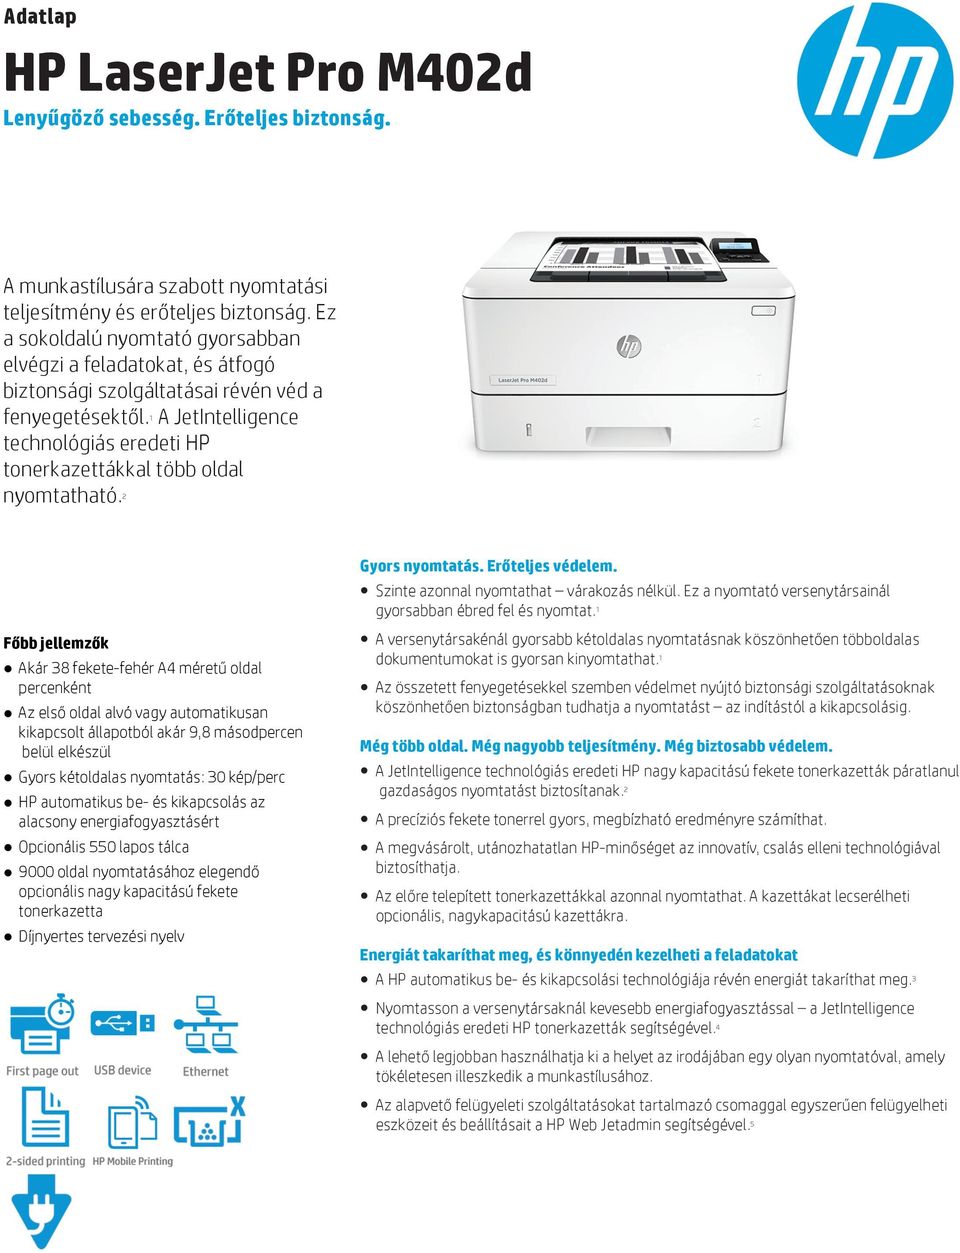 A JetIntelligence 1 technológiás eredeti HP tonerkazettákkal több oldal nyomtatható.